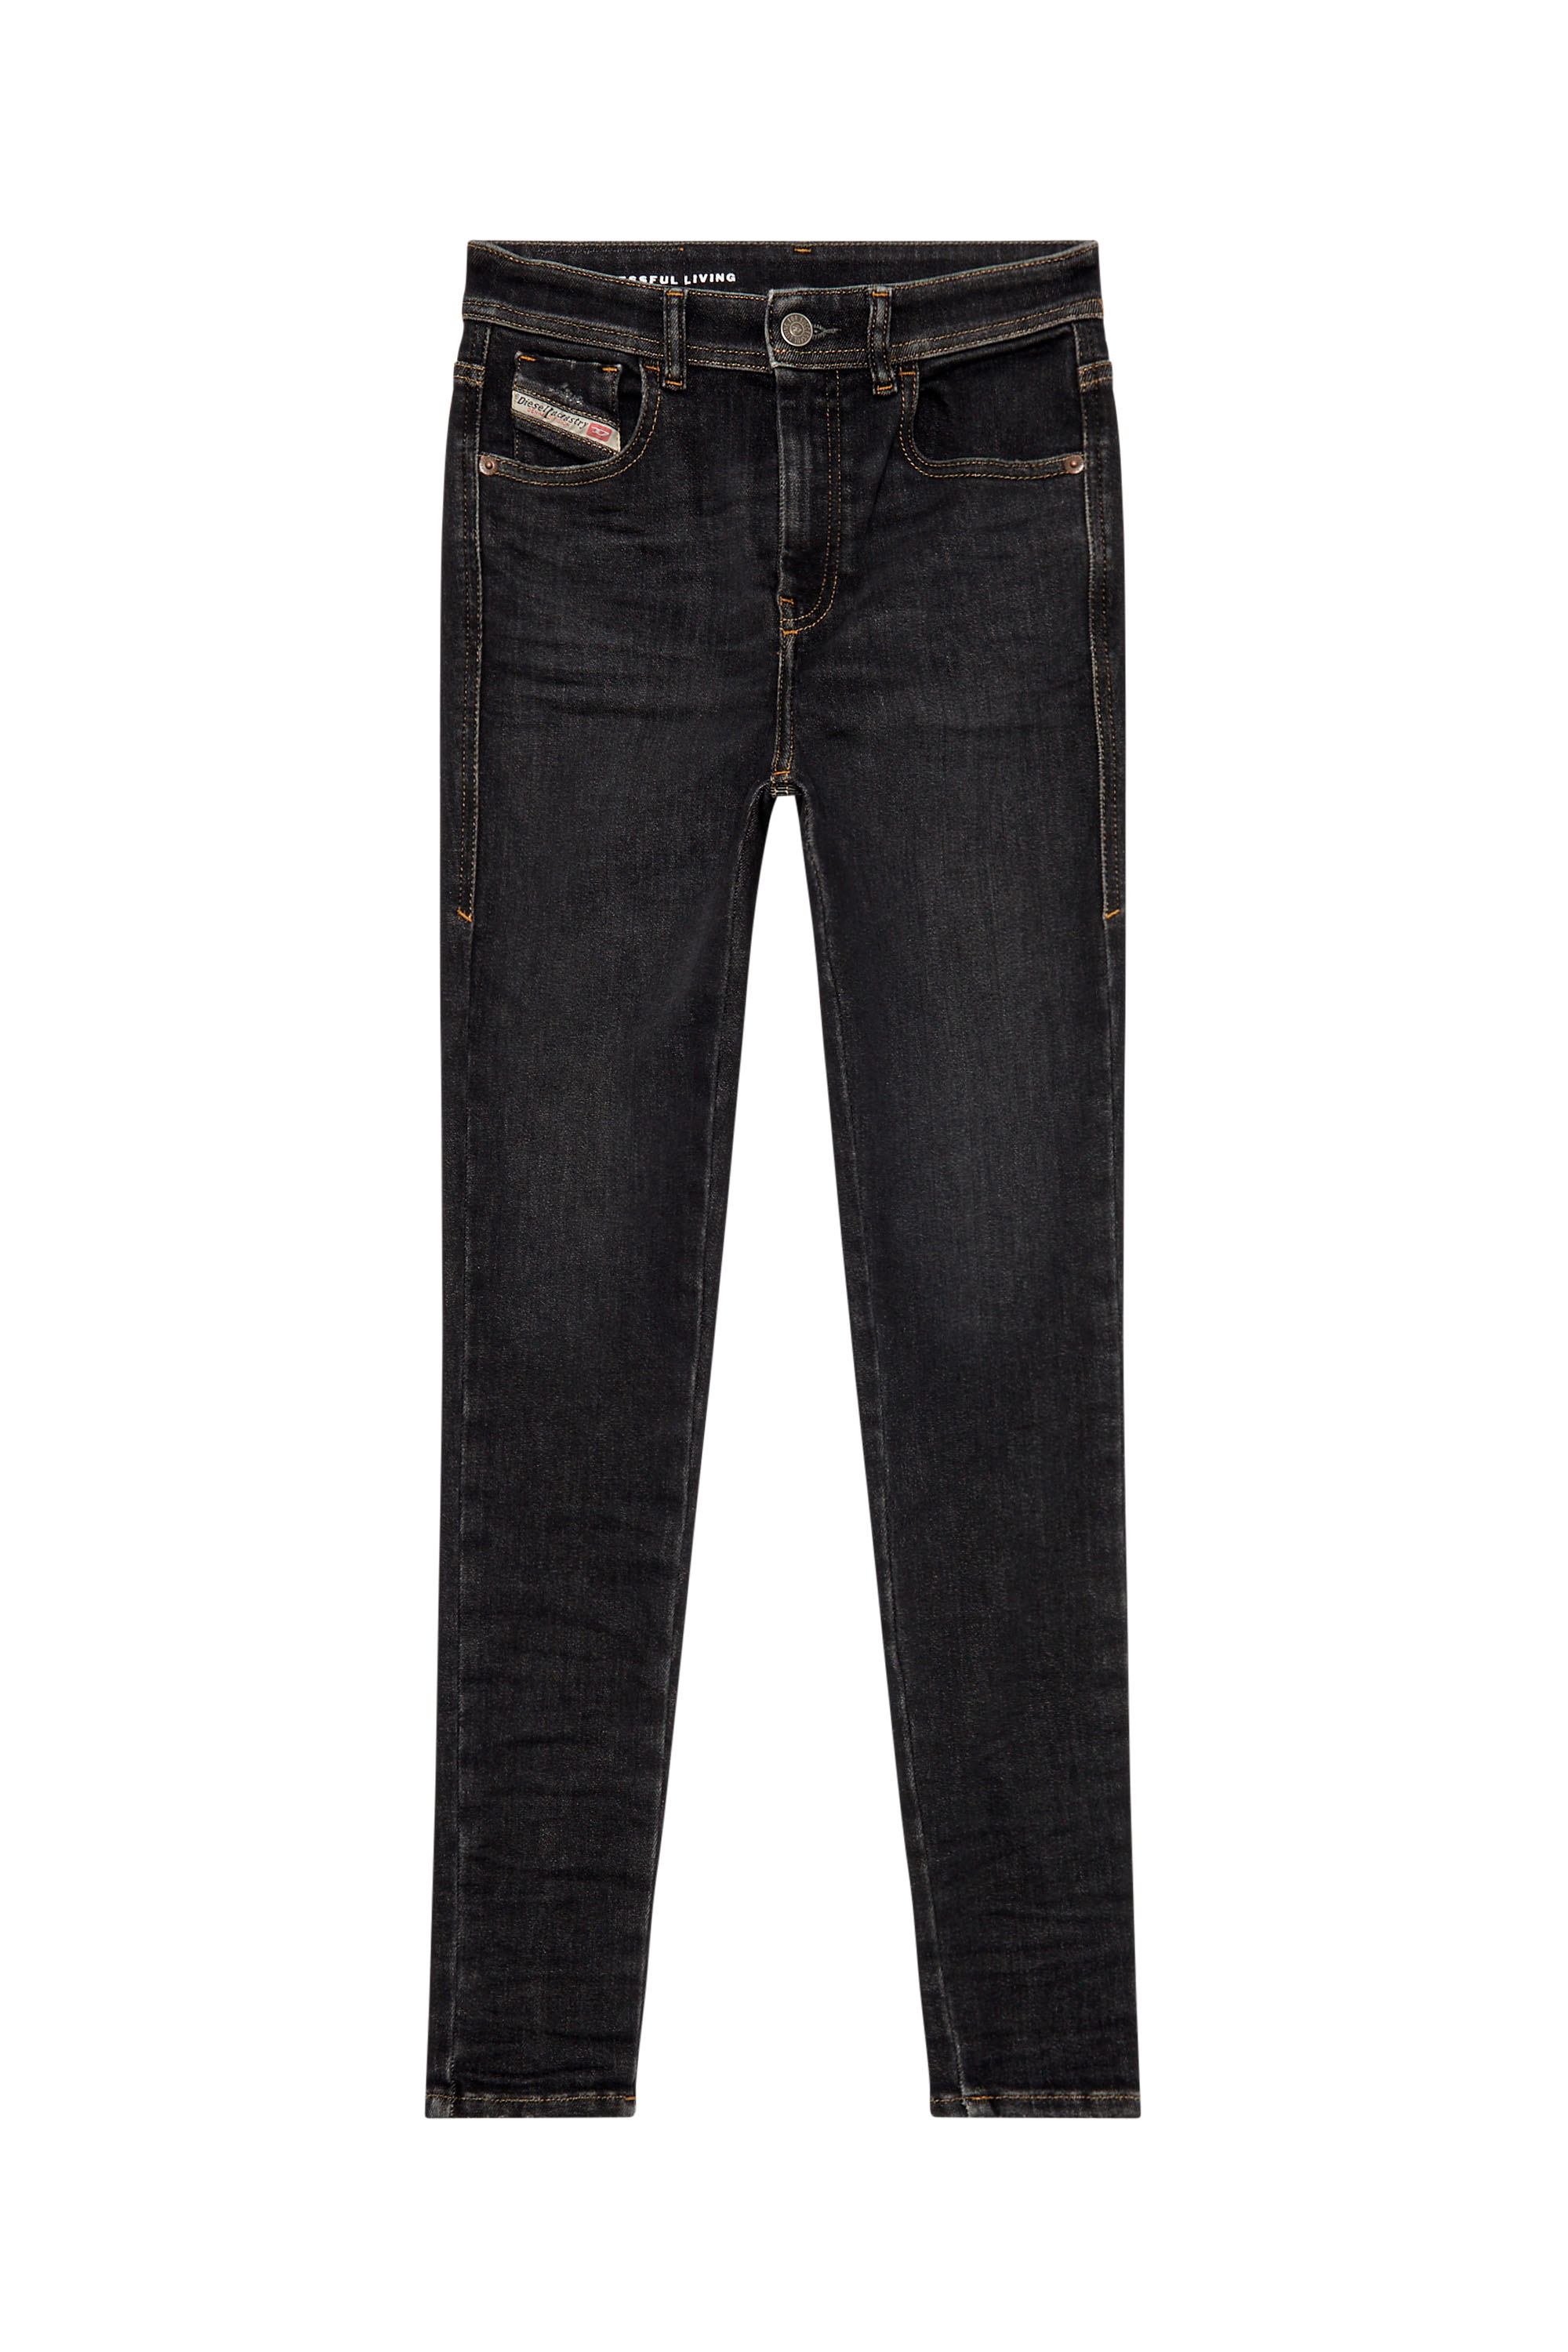 Diesel - Woman Super skinny Jeans 1984 Slandy-High 09H89, Black/Dark grey - Image 3